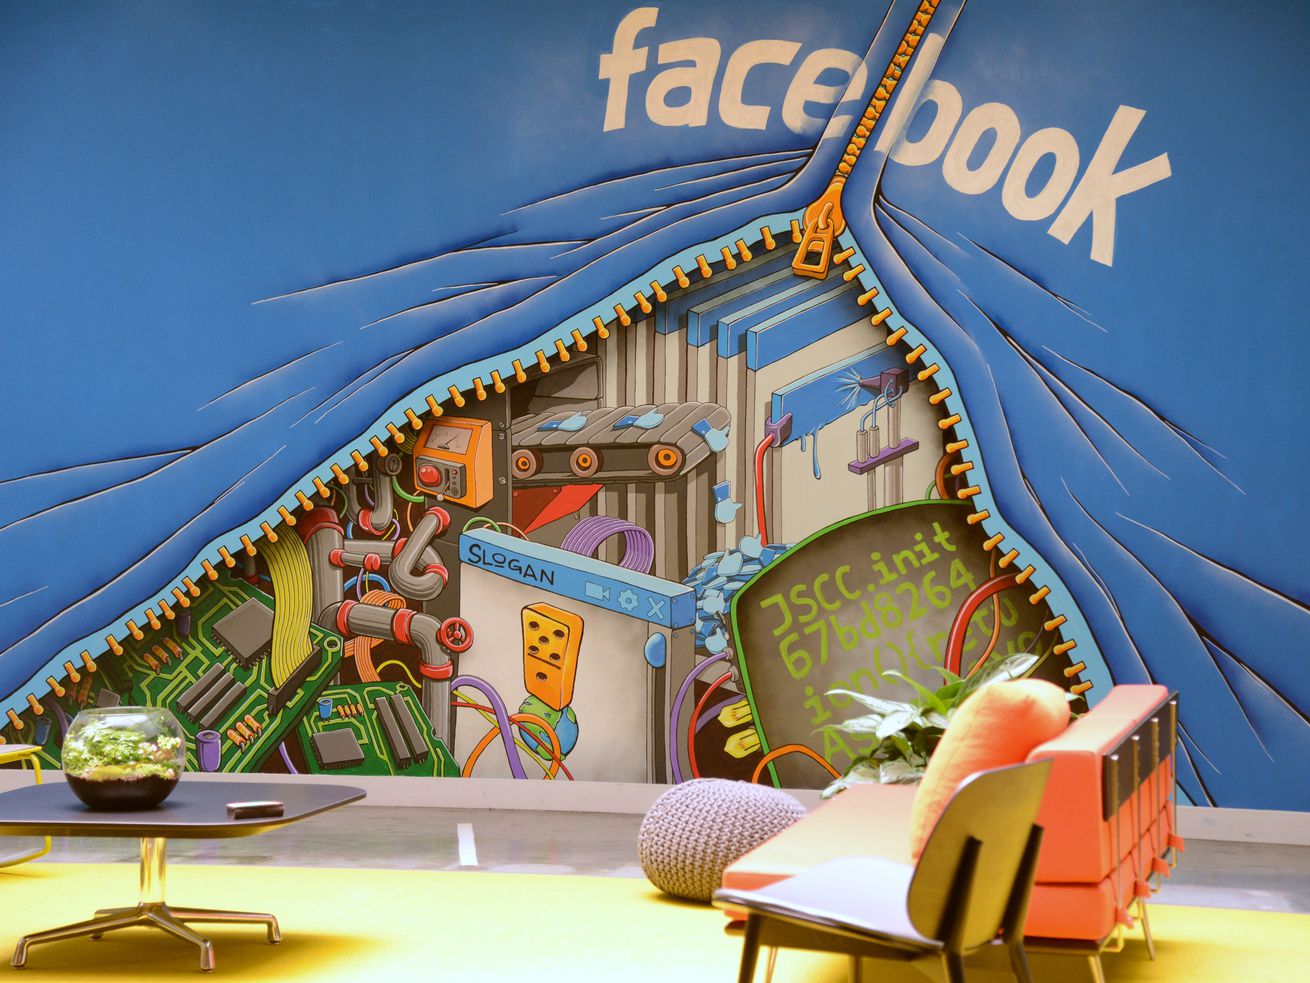 A mural in Facebook’s headquarters depicting a zipper revealing a scene underneath.